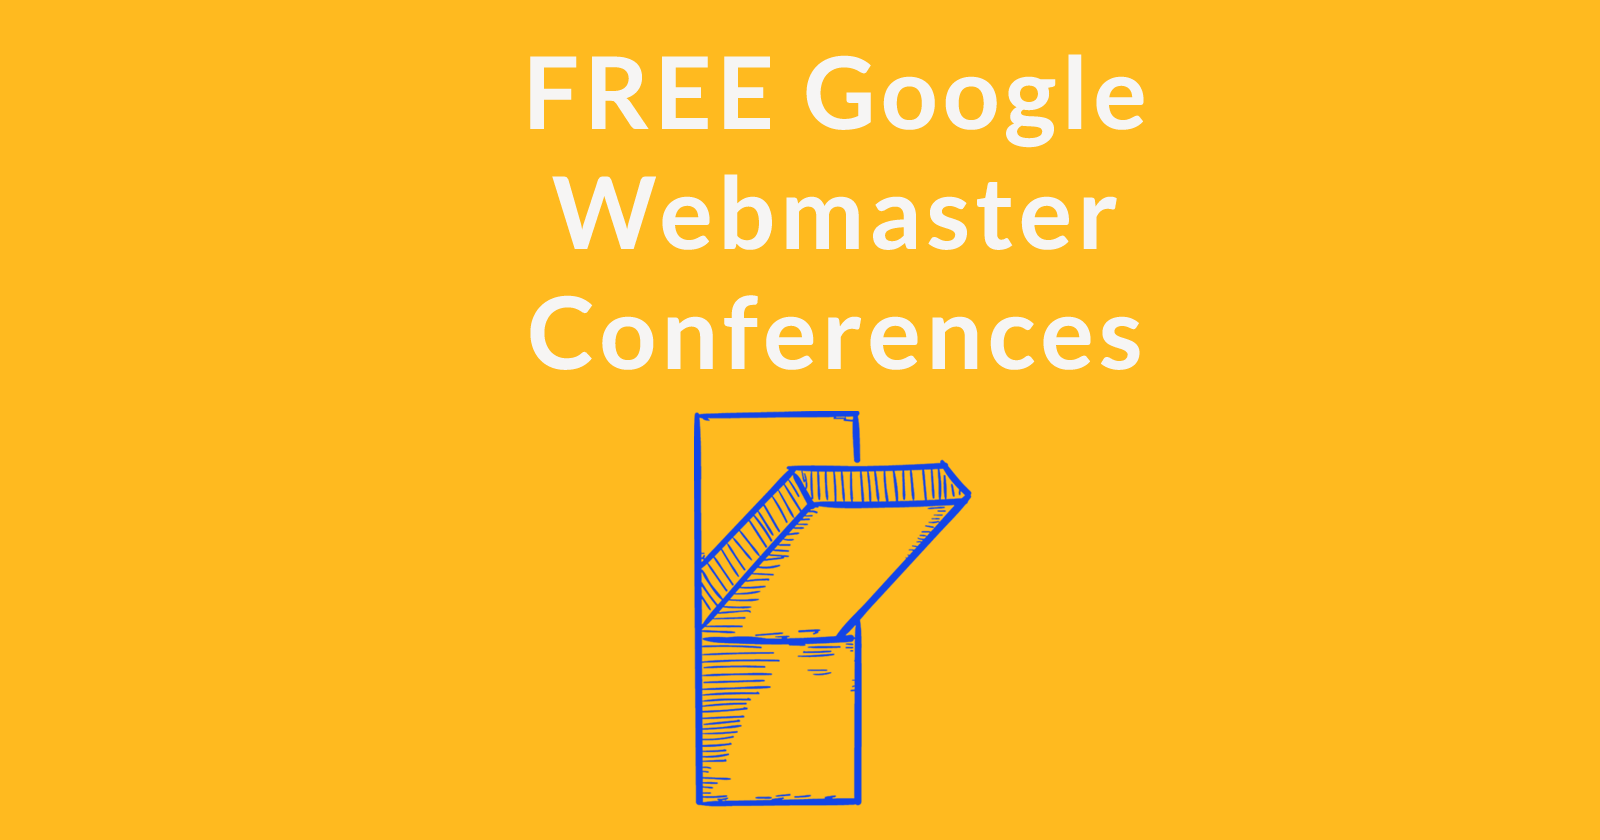 Google annonce des conférences gratuites pour les webmasters